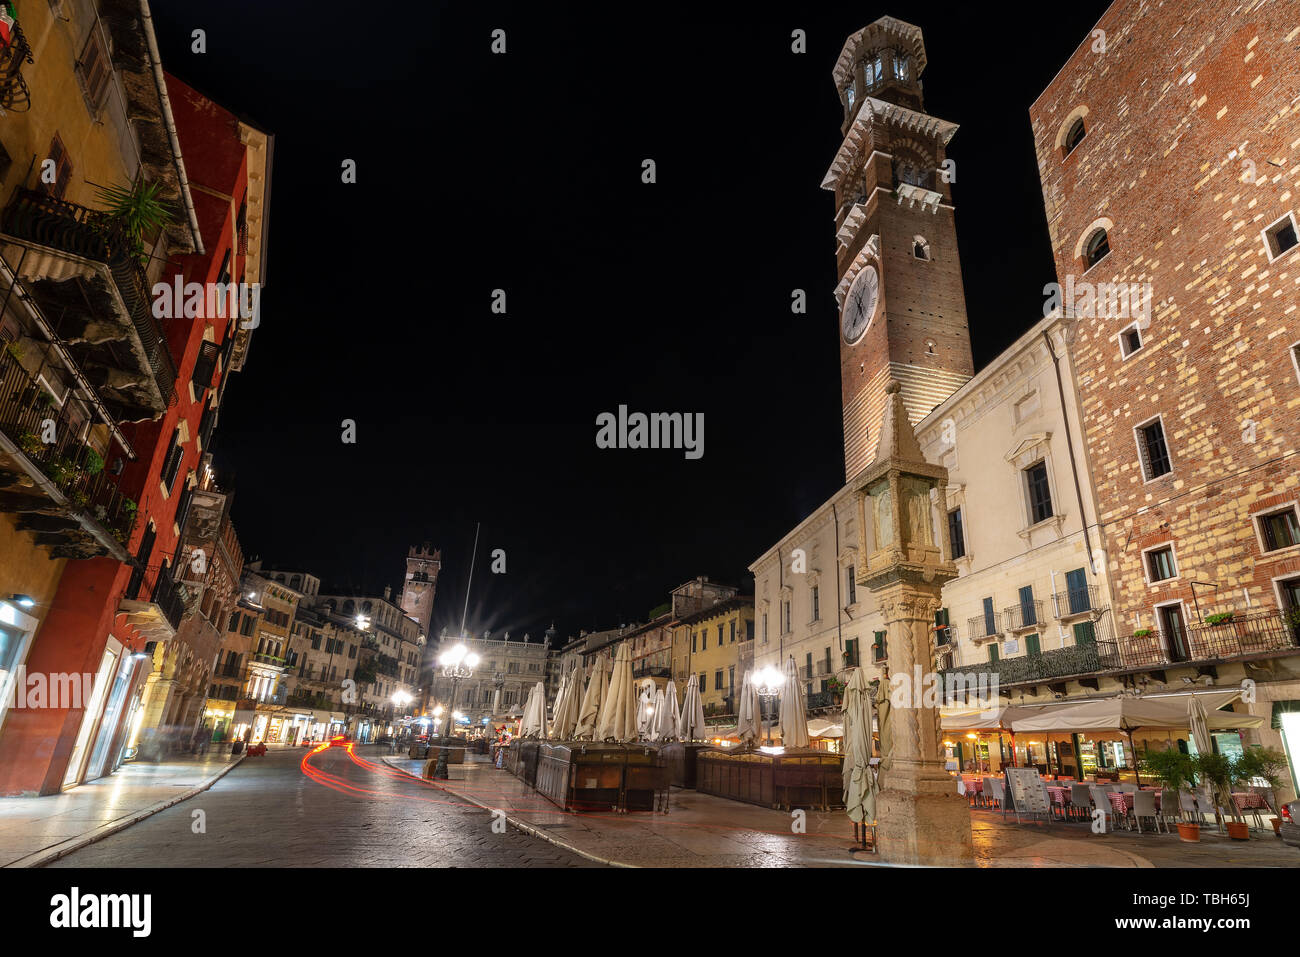 Piazza delle Erbe e la torre medievale (Torre dei Lamberti) di notte, è la piazza più antica di Verona nonché patrimonio dell'UNESCO, Veneto, Italia, Europa Foto Stock